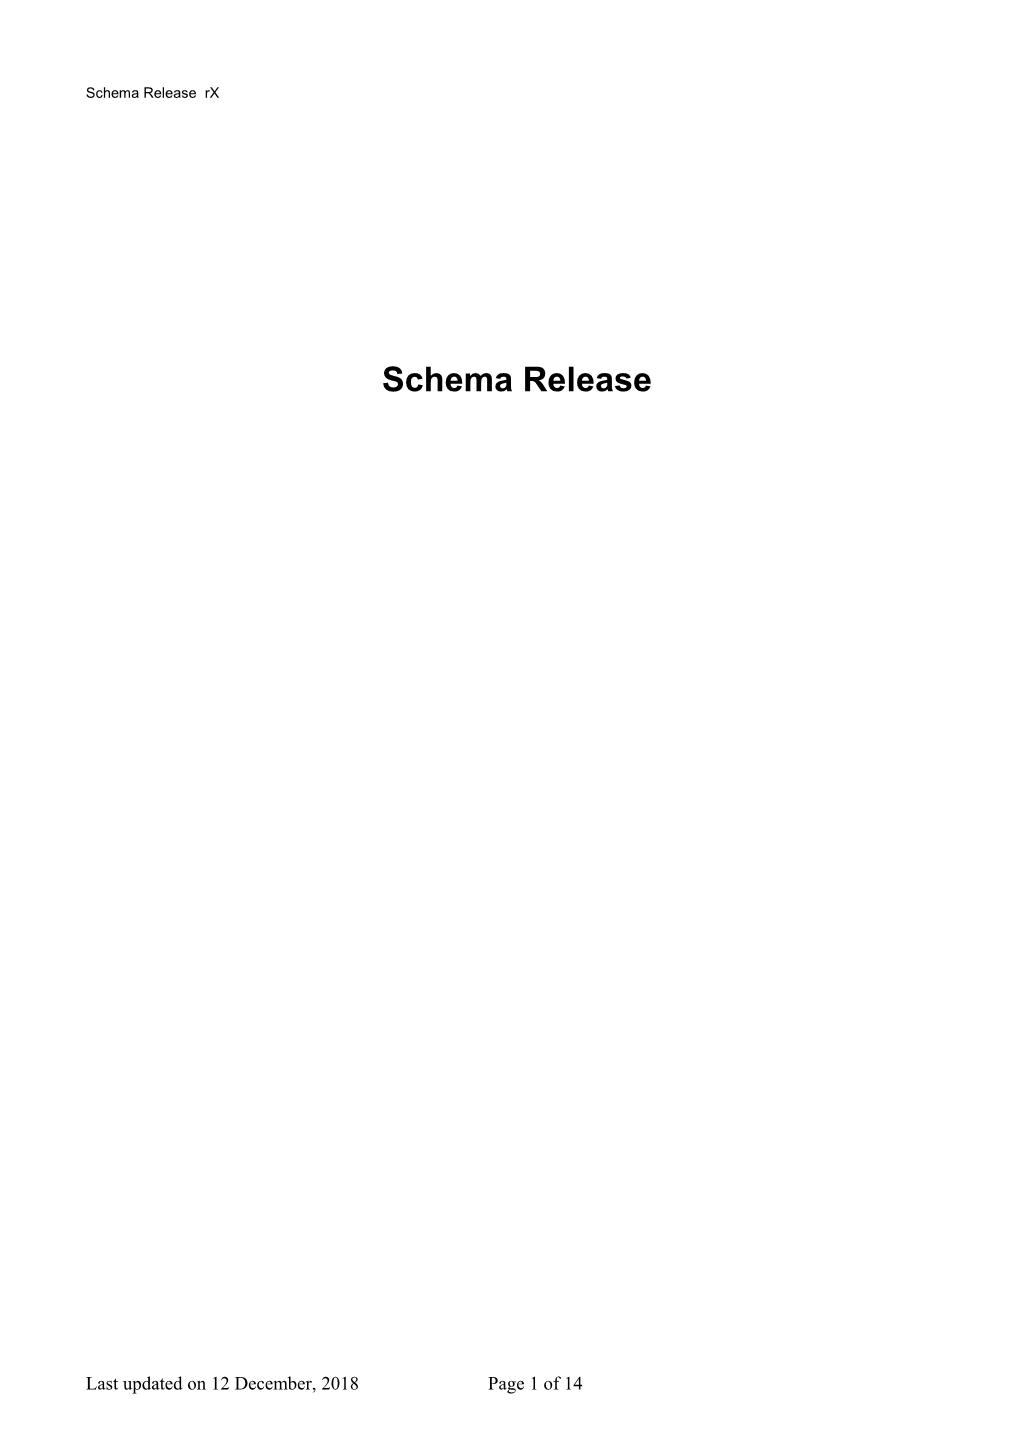 Schema Release Notes R15